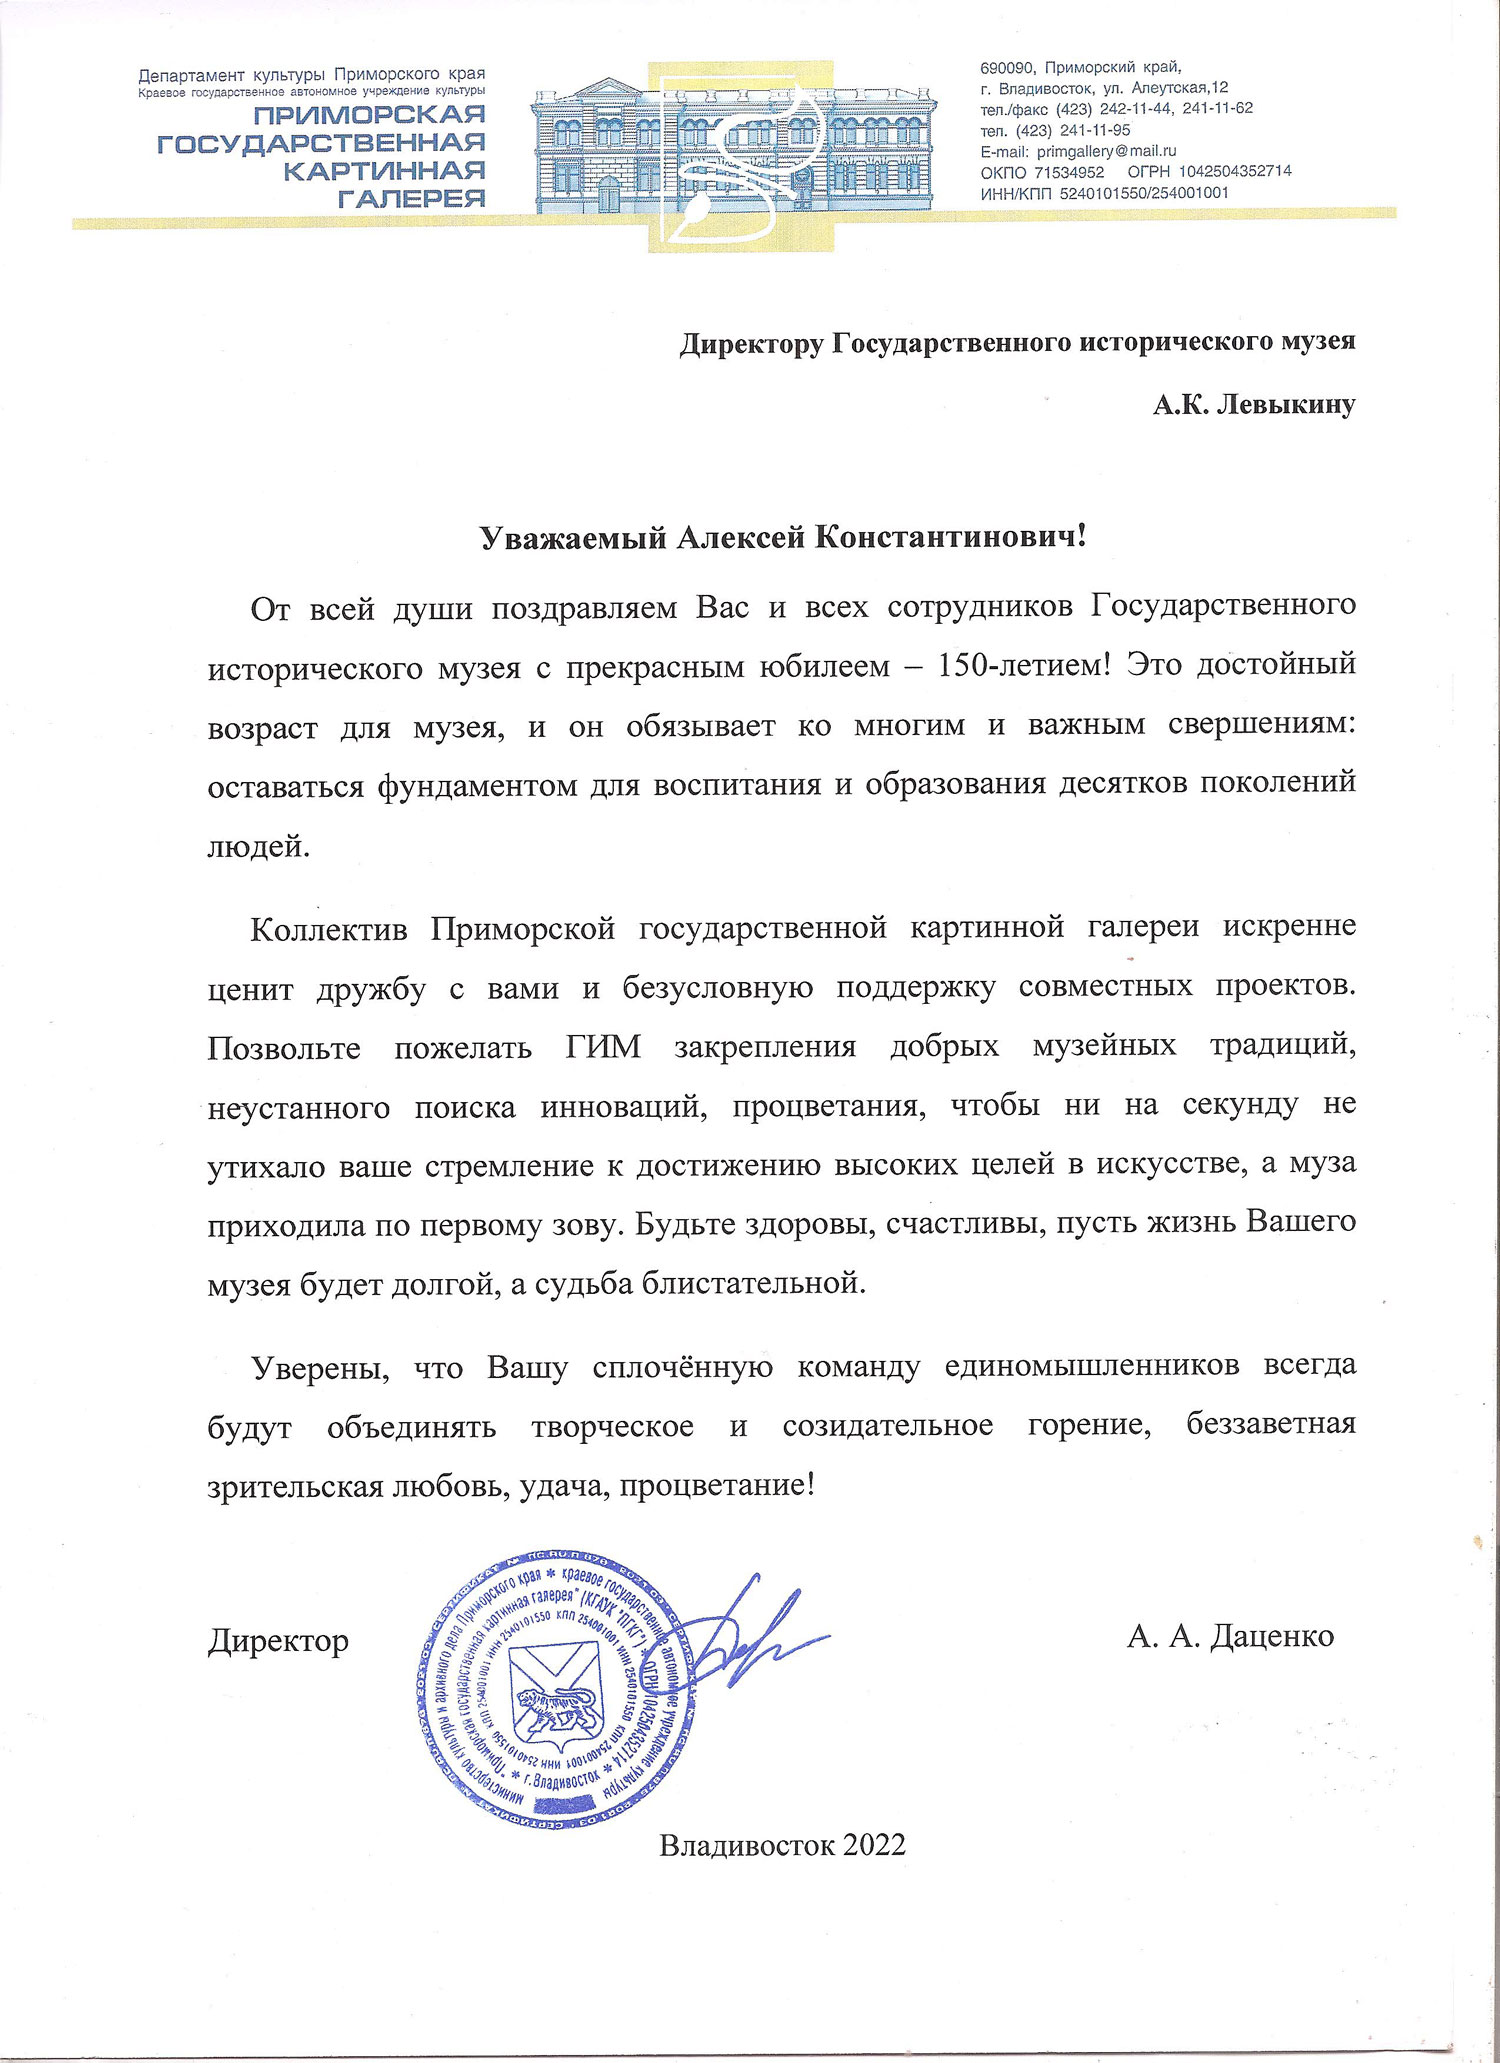 Письмо от директора Приморской государственной картинной галереи Даценко А. А.